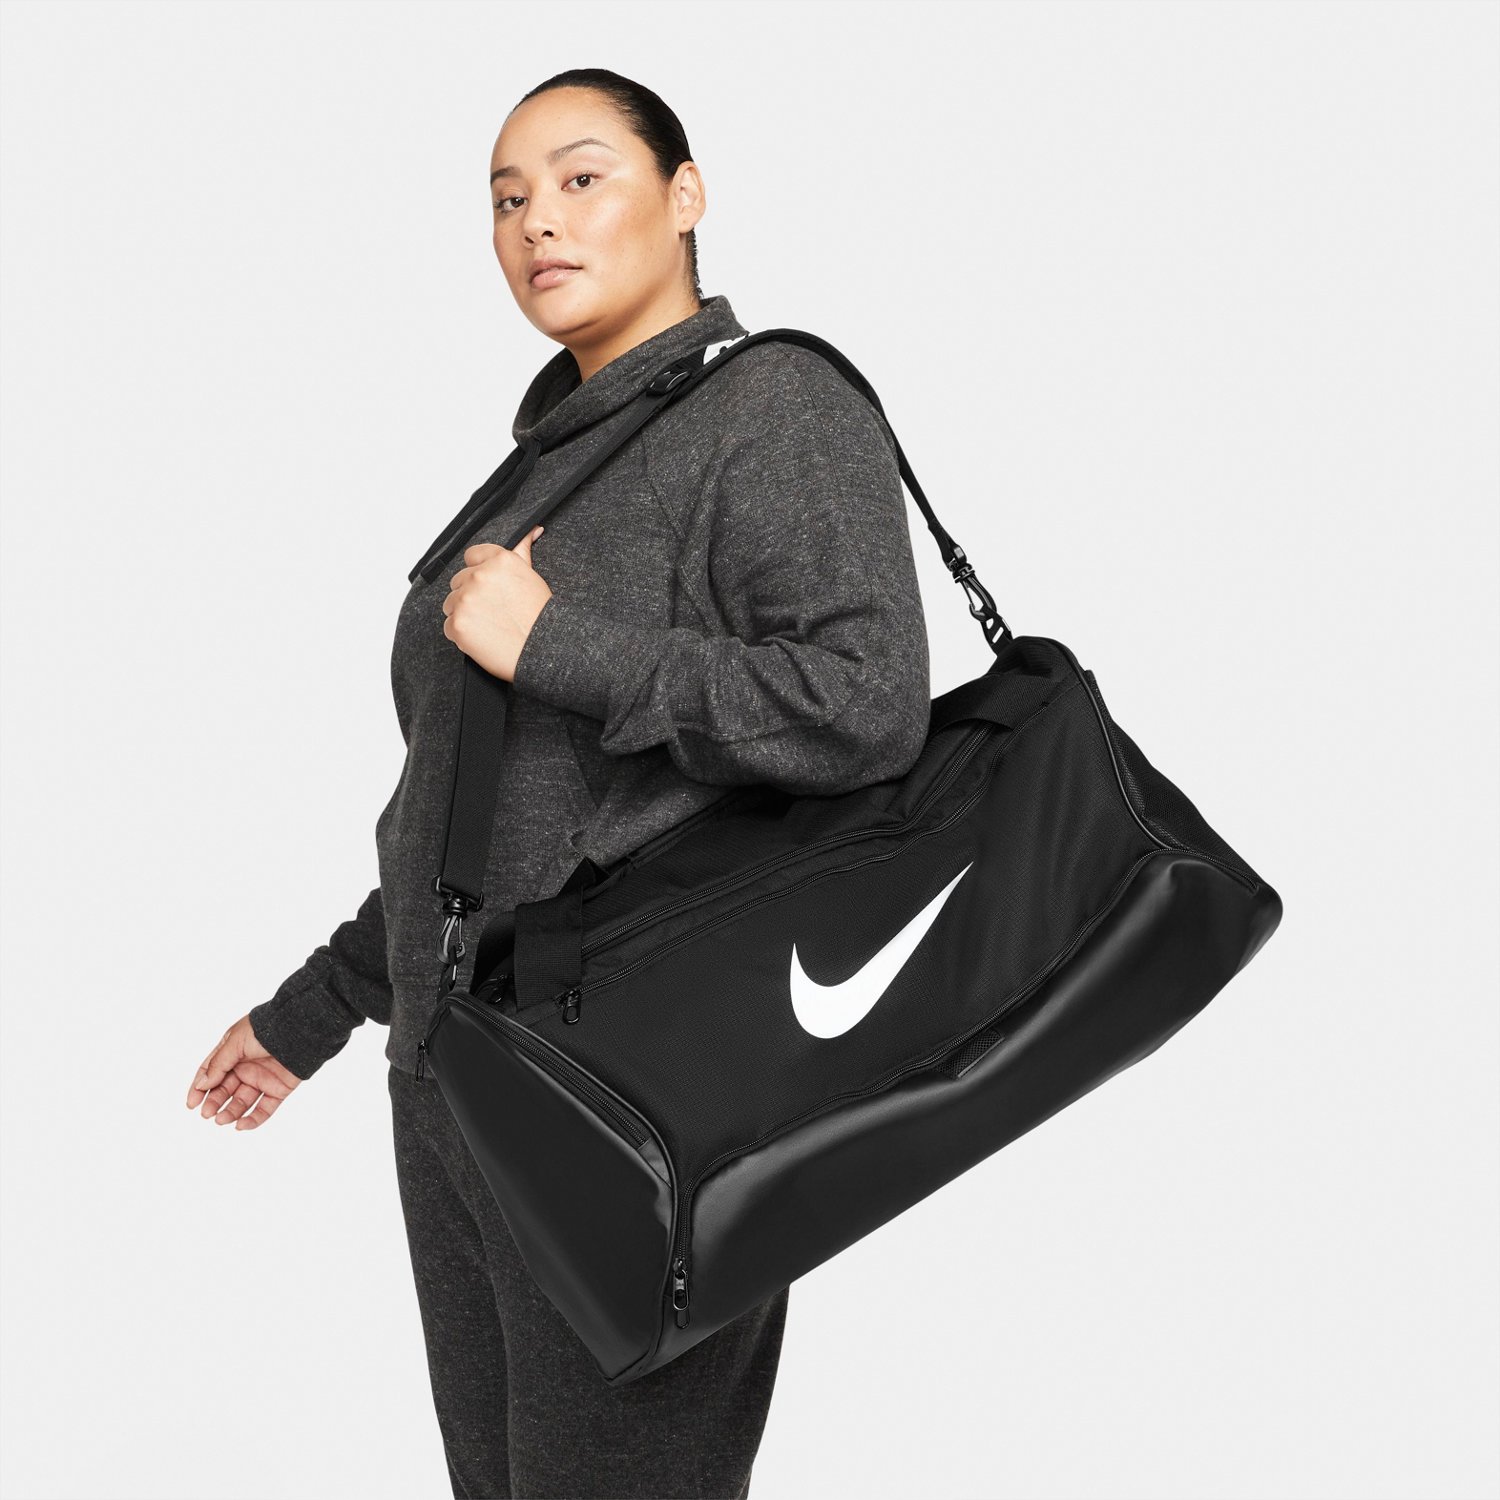 LSU, LSU Nike Utility Duffel Bag